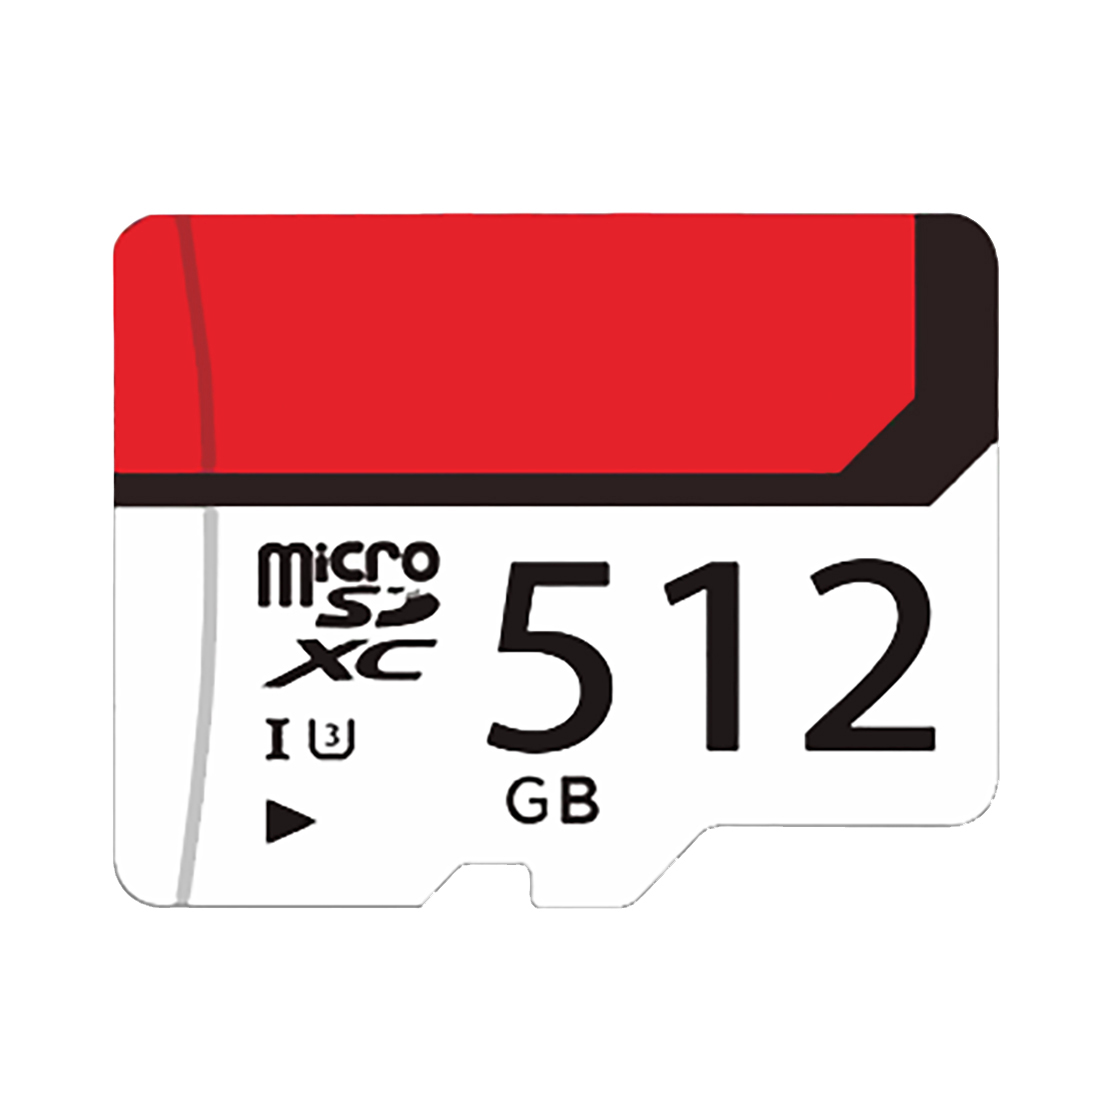 کارت حافظه MicroSDXC مدل eco کلاس 10 استاندارد UHS-I U3 سرعت 30MB/s ظرفیت 512 گیگابایت